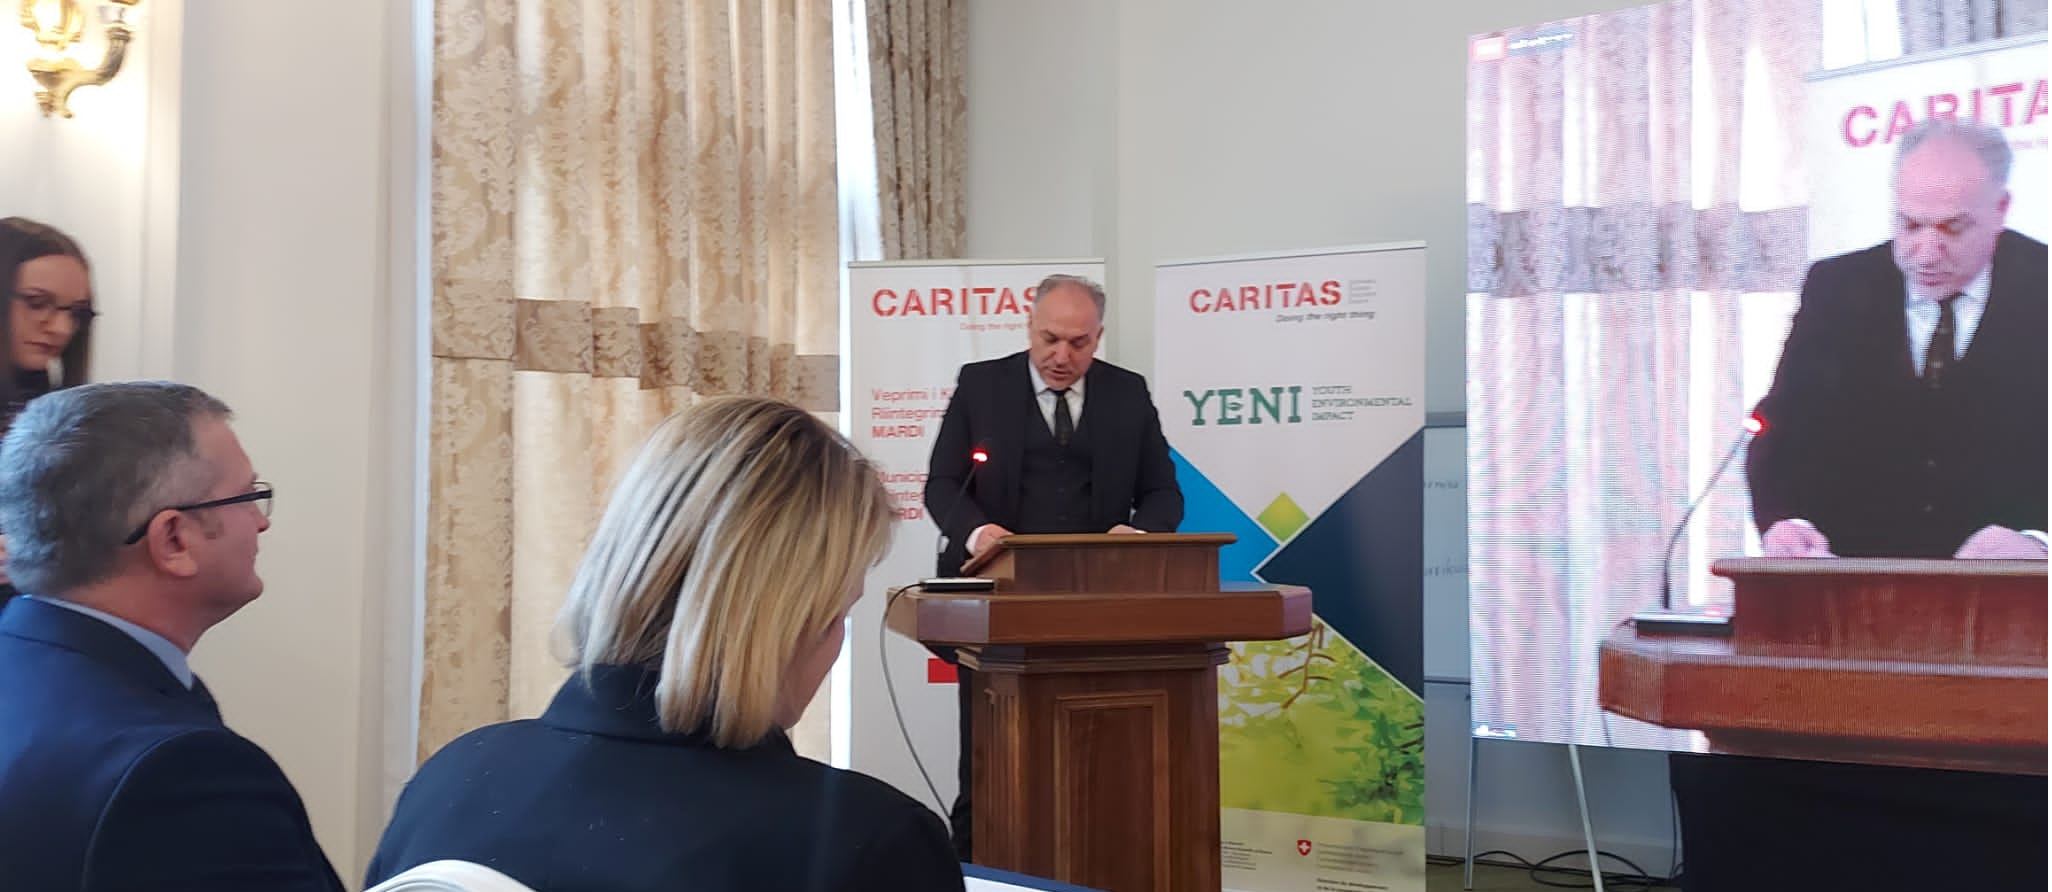 Ministria e Zhvillimit Rajonal në bashkëpunim me CARITAS-in Zviceran në Kosovë lansojnë  projektet YENI dhe MARDI